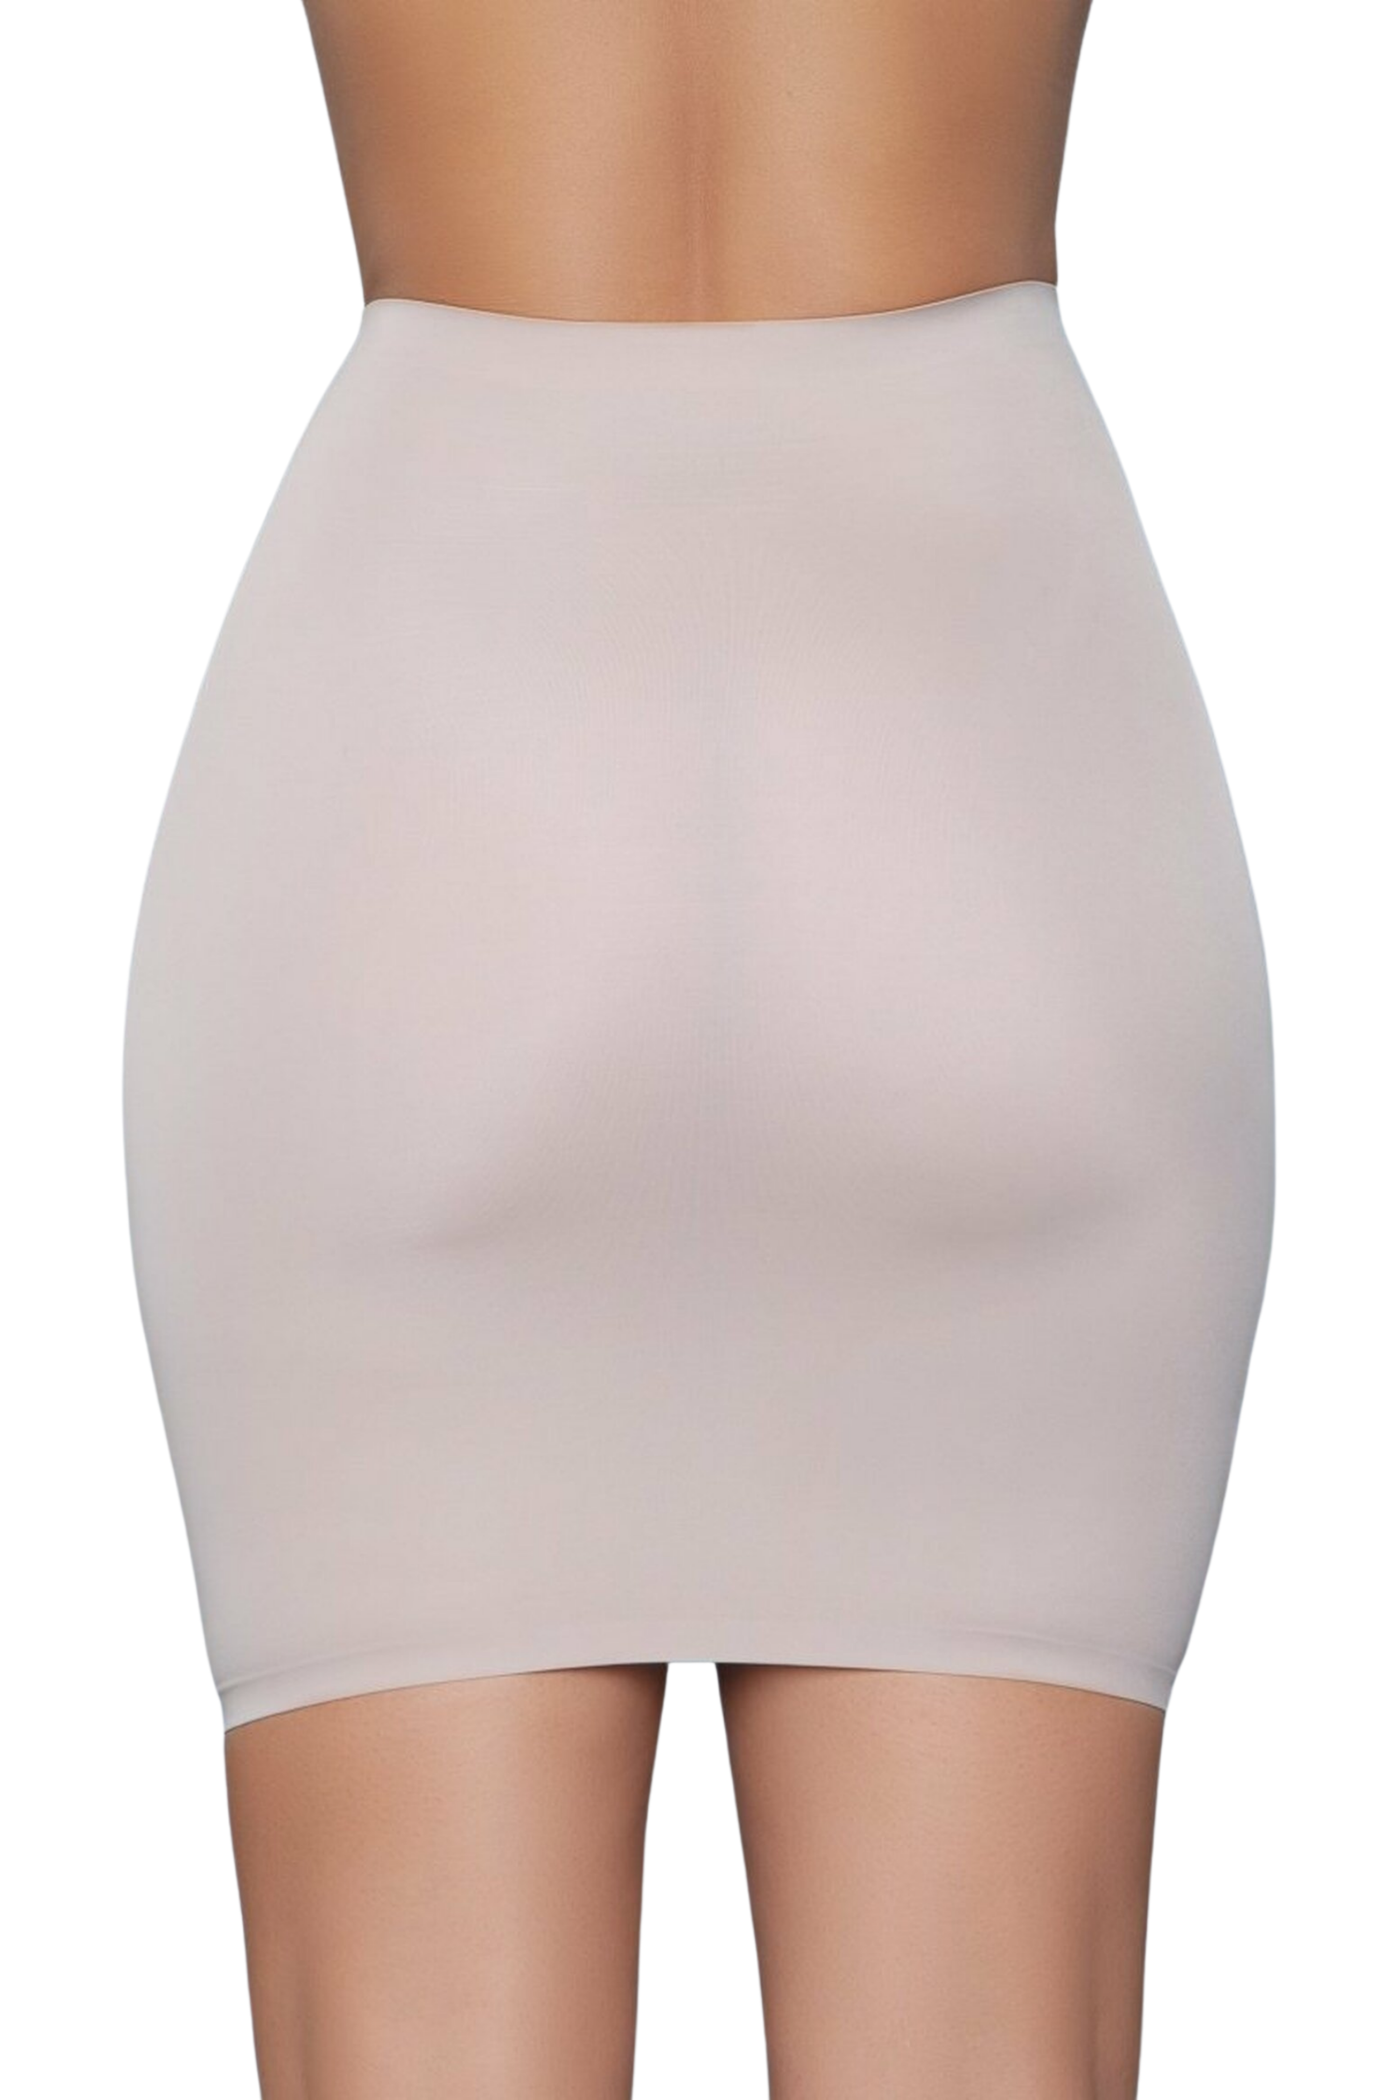 Shapewear Slip Skirt - For Love of Lingerie